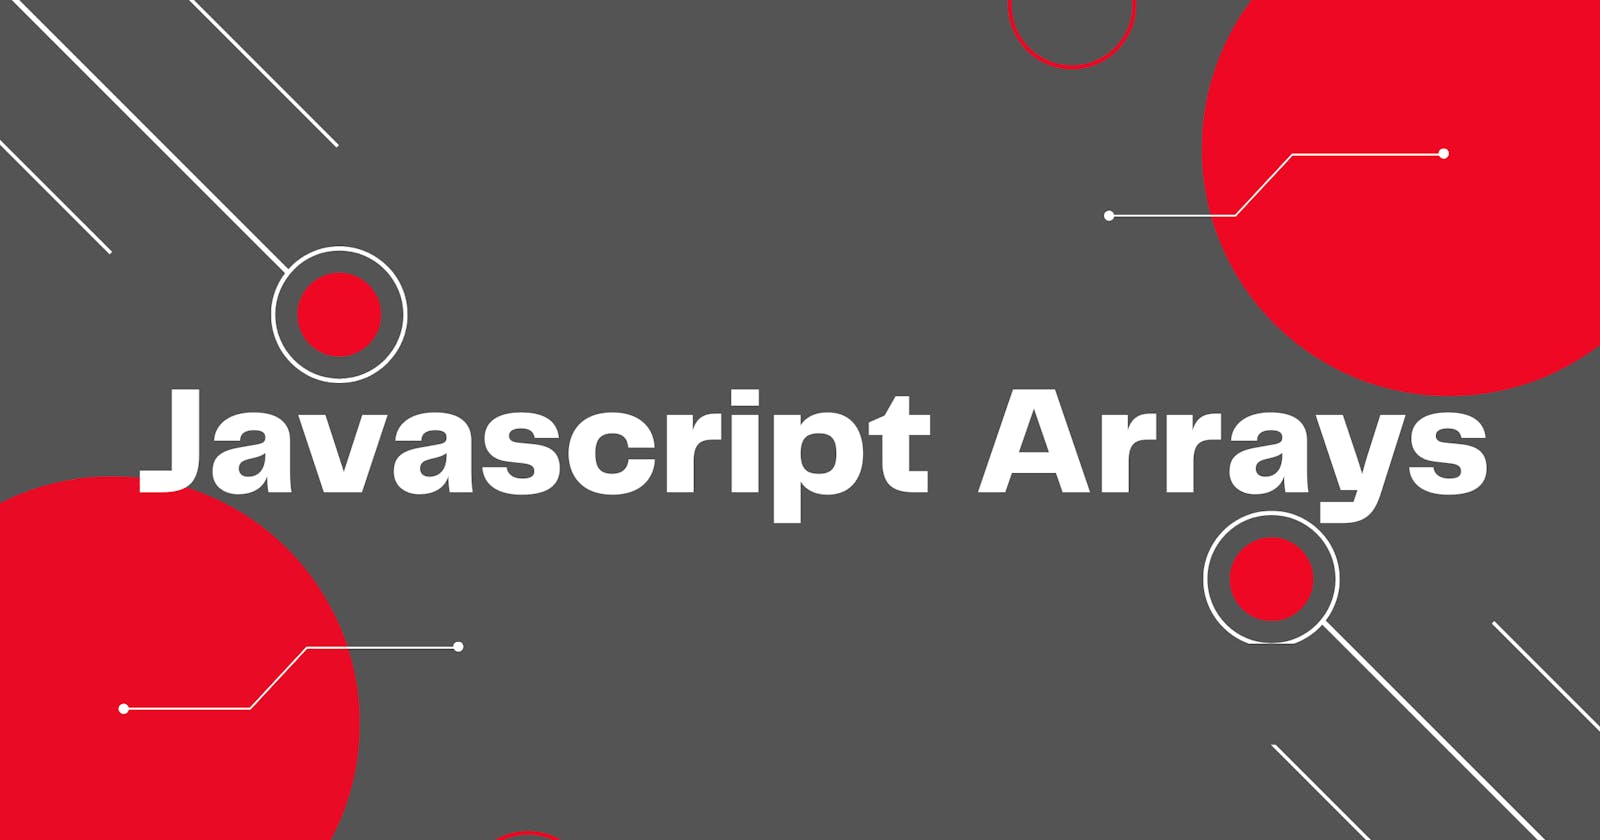 Understanding JavaScript Arrays in very simple terms